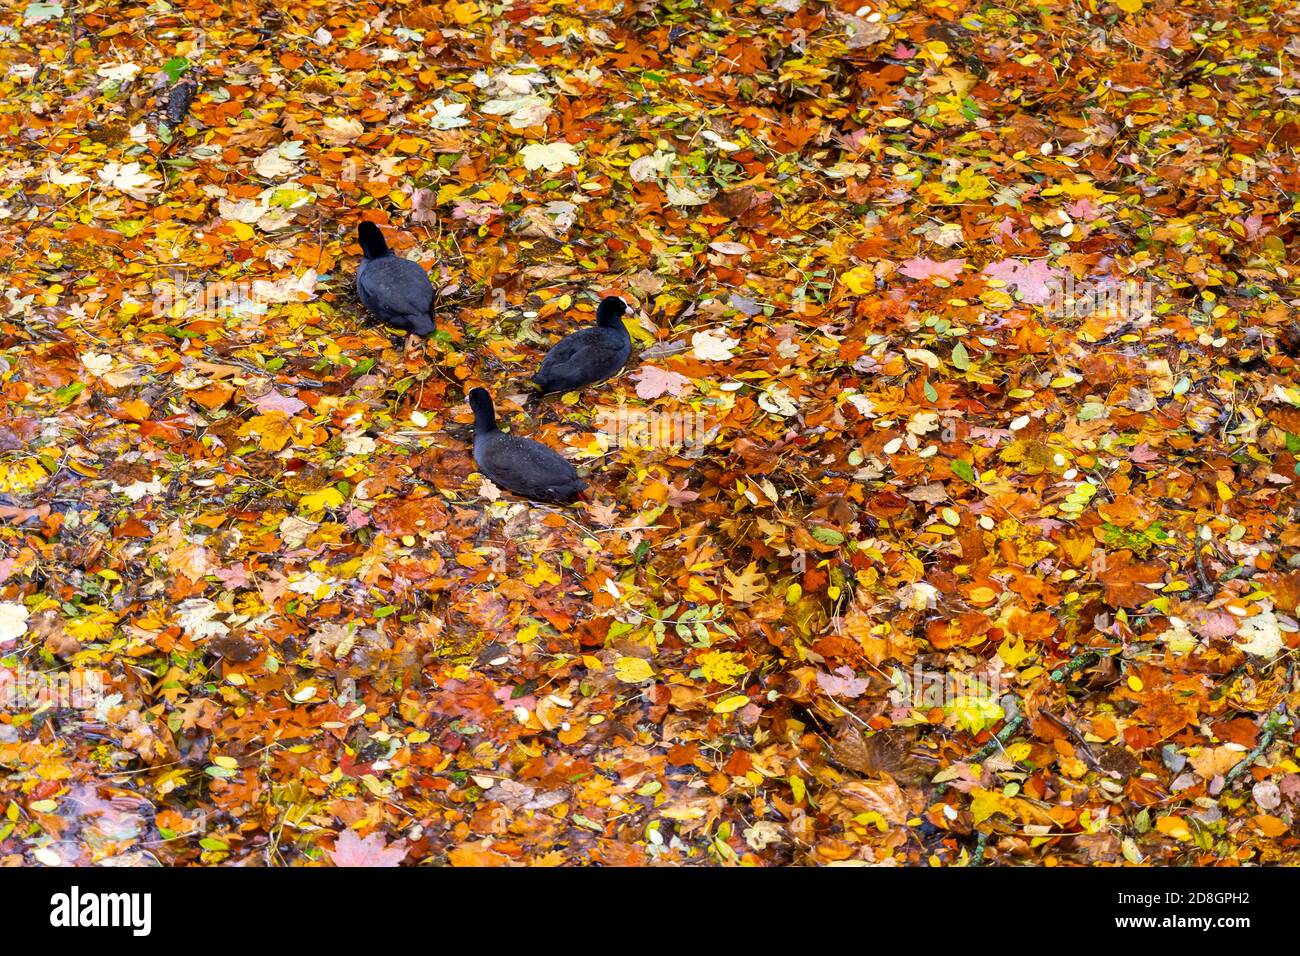 Bunte Blätter, Laub, im Herbst, schwimmen auf der Oberfläche eines Teichs, Regenwetter, Blässhühner schwimmen zwischen den Blättern, Stockfoto